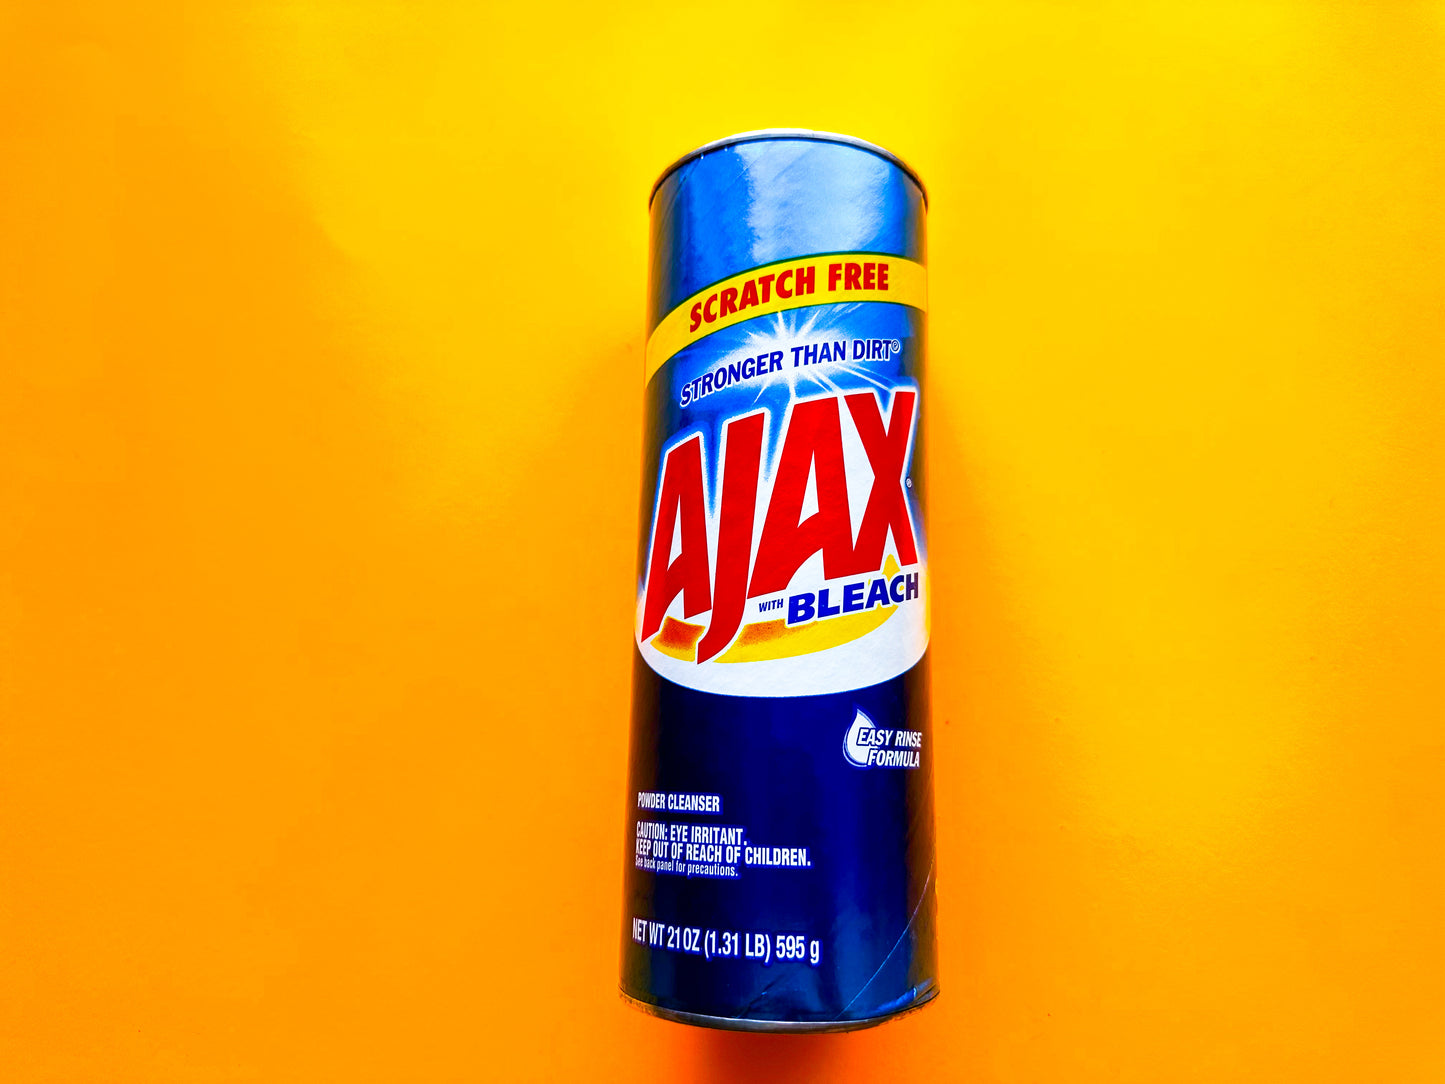 Ajax Powder Cleanser with Bleach